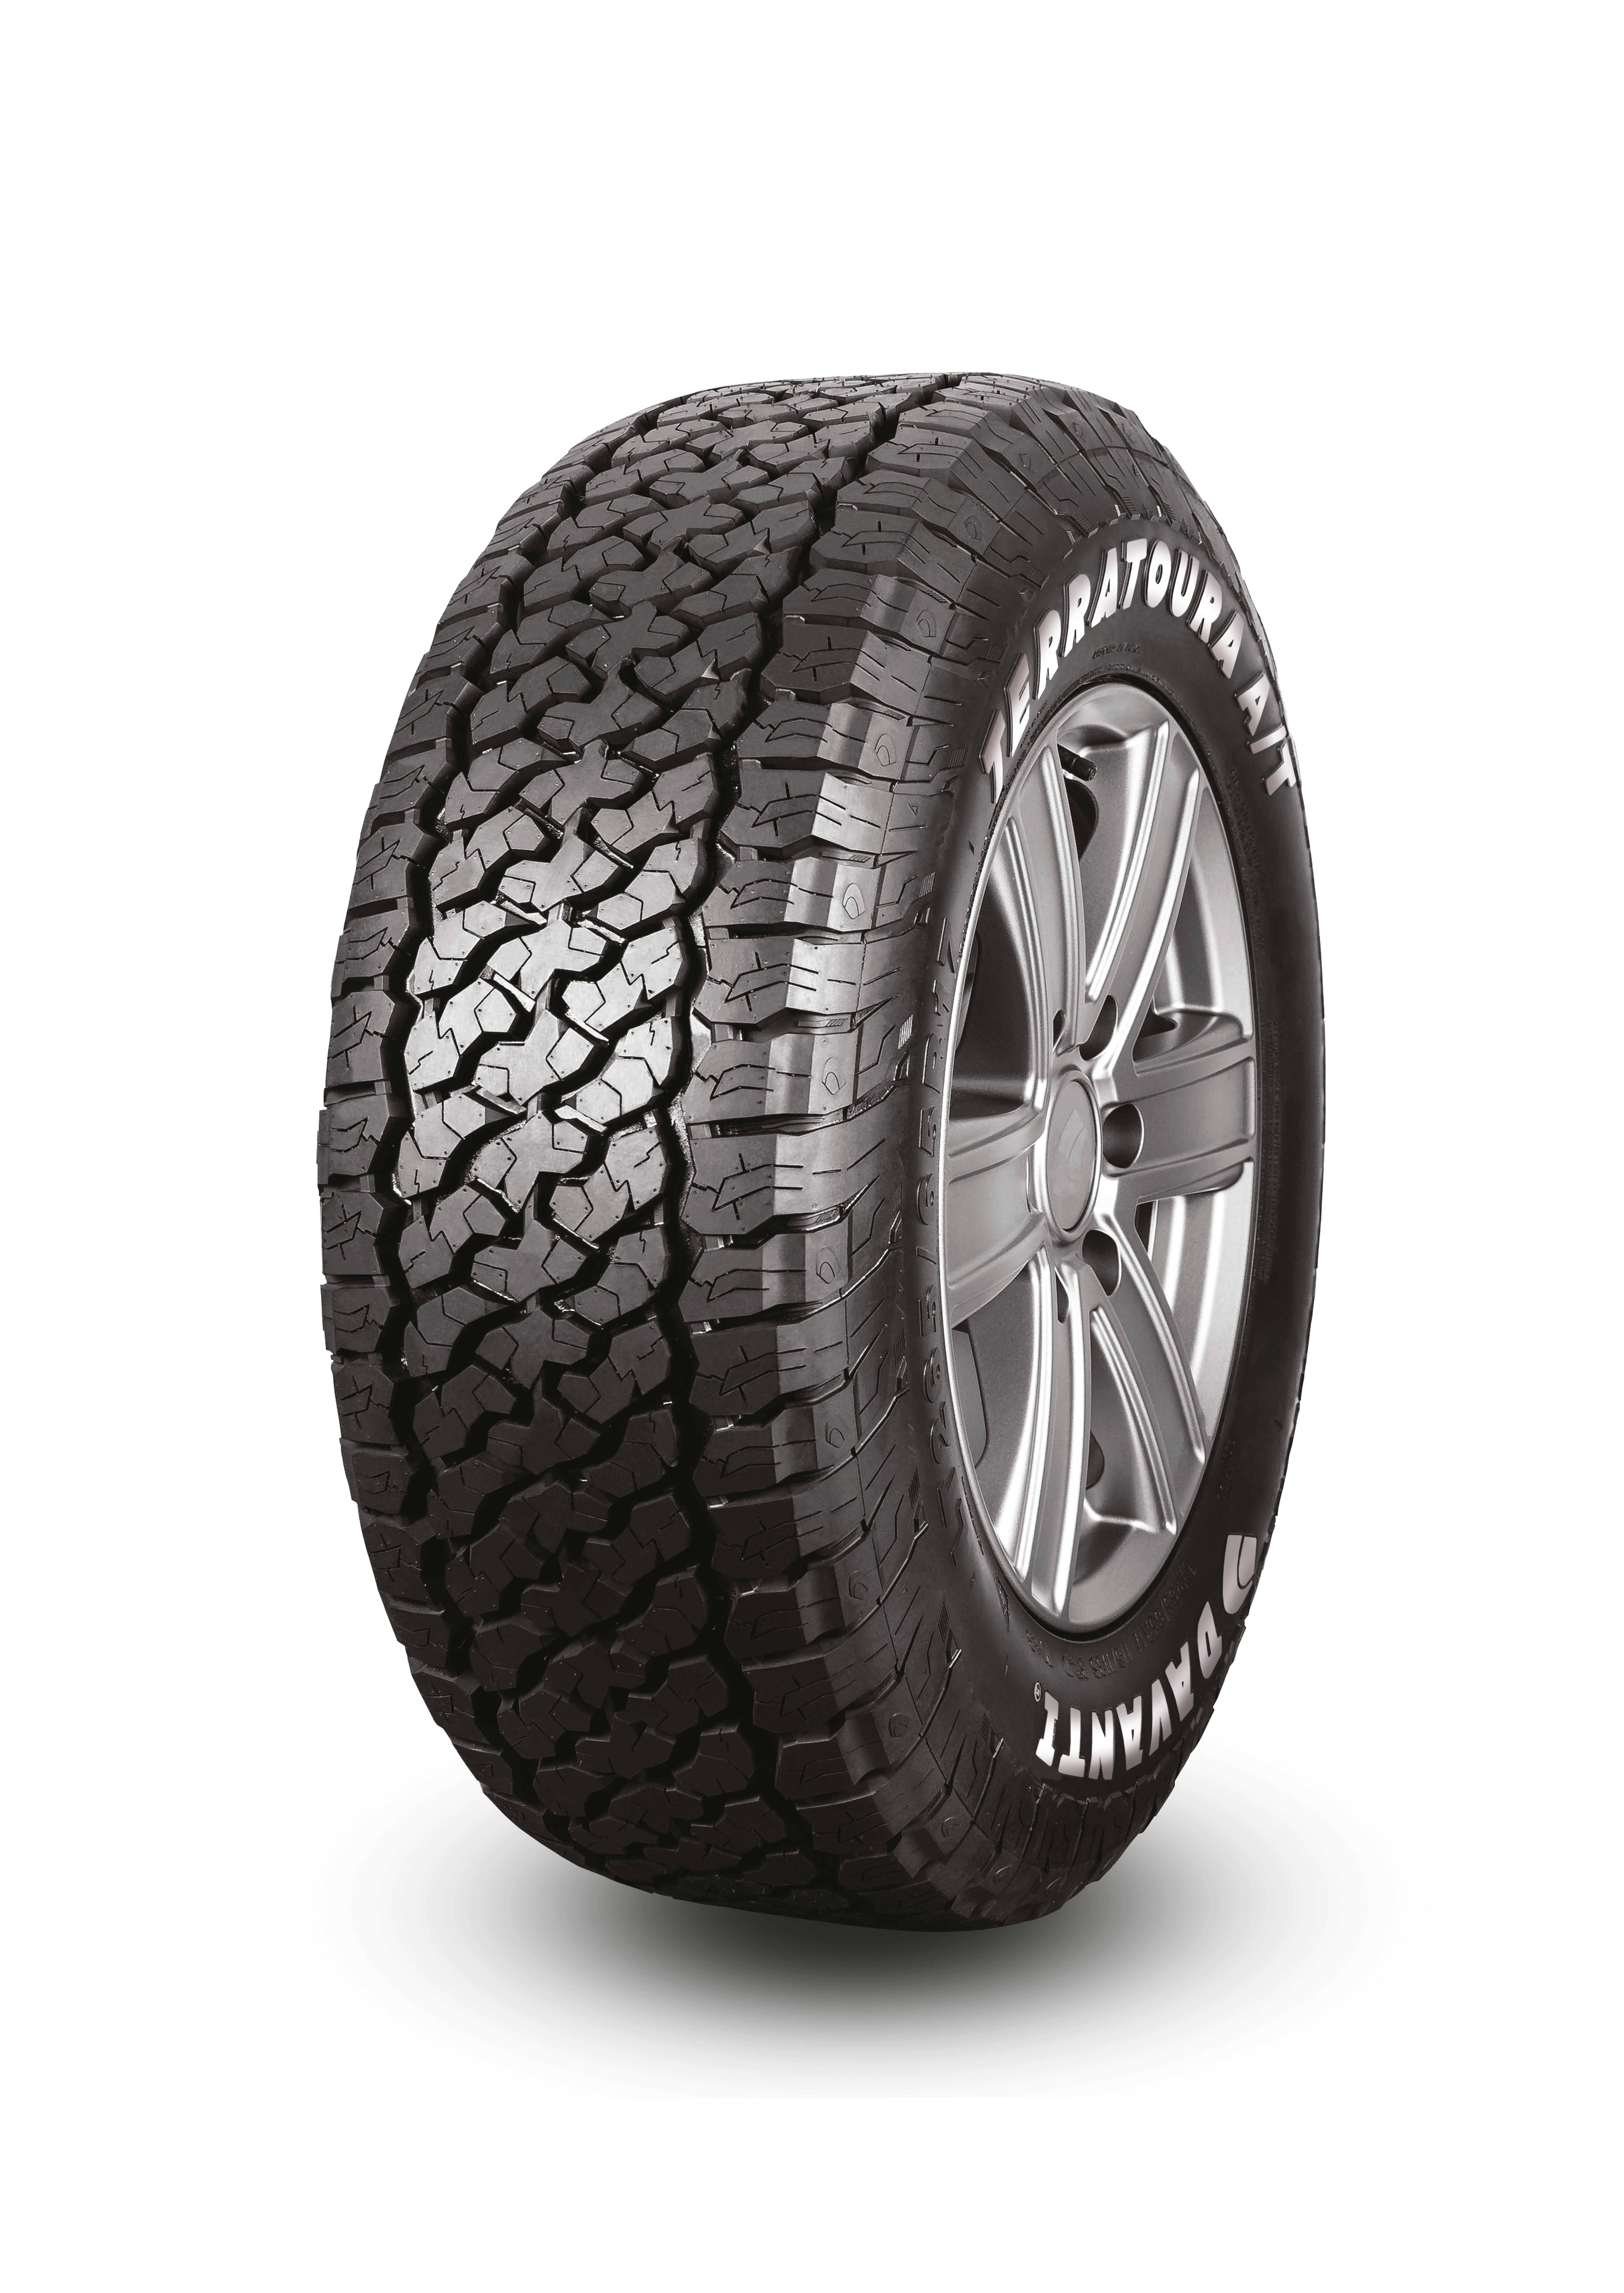 Terratoura Tyre, Davanti Tyres - CJ Auto Service